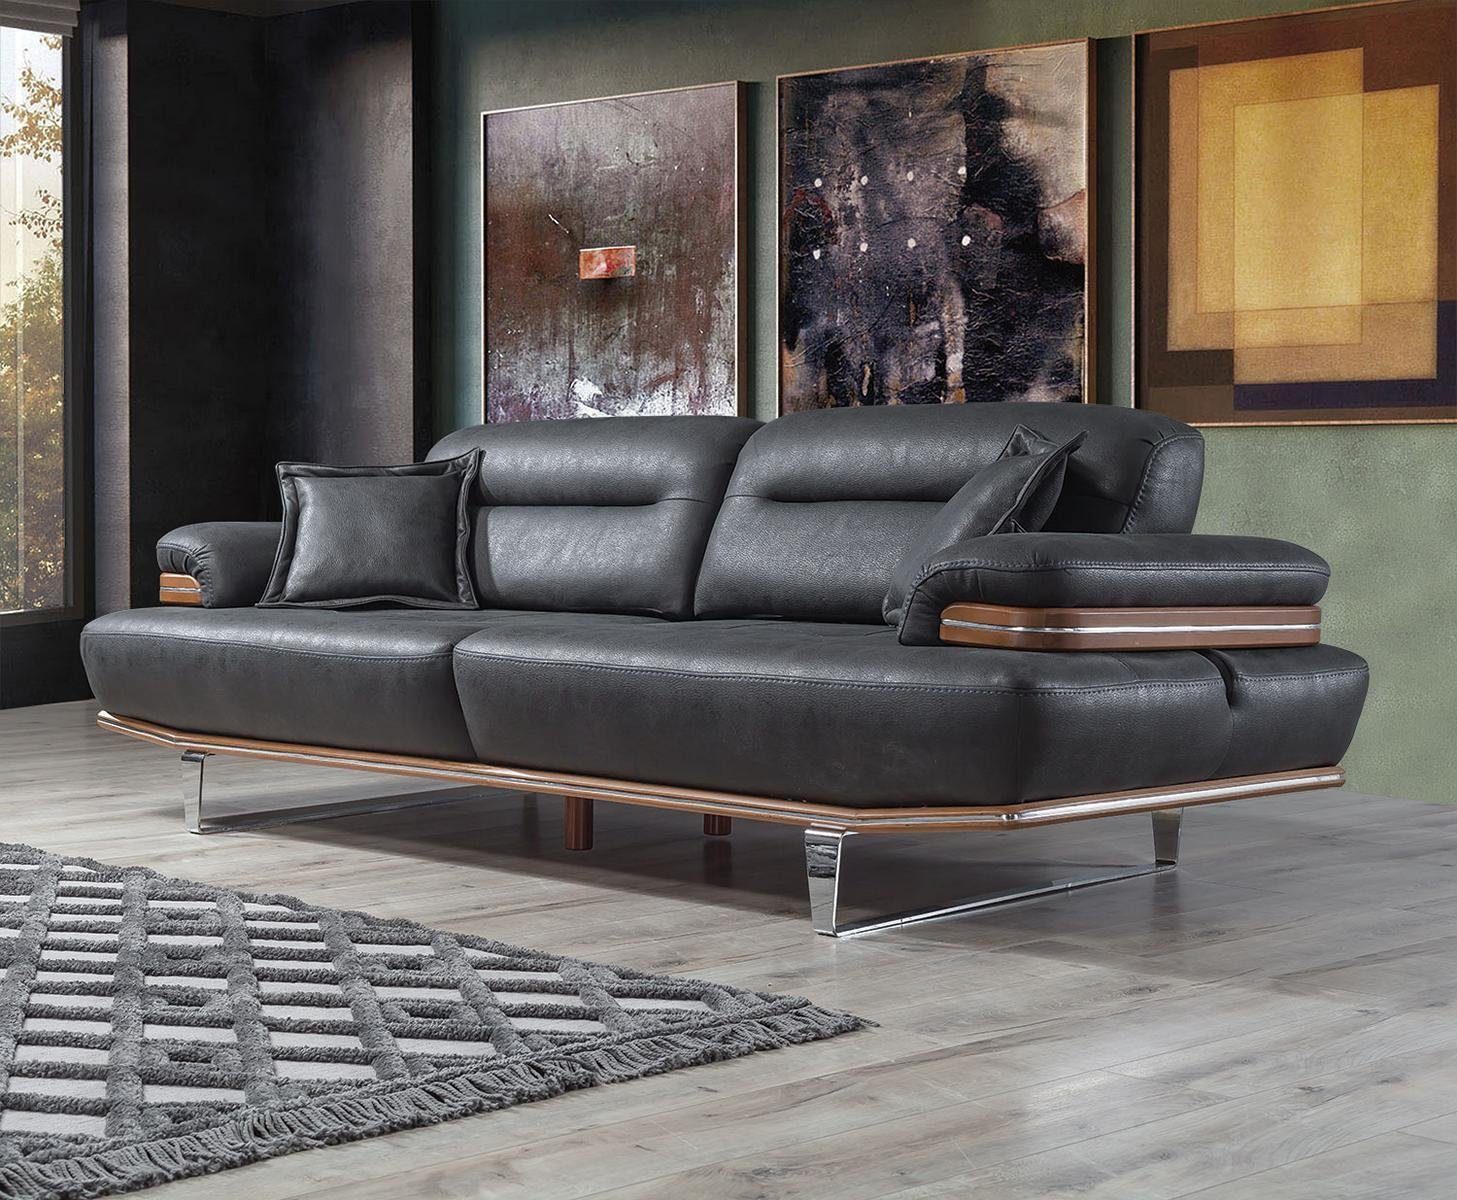 JVmoebel Sofa Dreisitzer Luxus Sofa 3 Sitz Sofas Sitz Leder Design Couch Möbel Stil, 1 Teile, Made in Europa